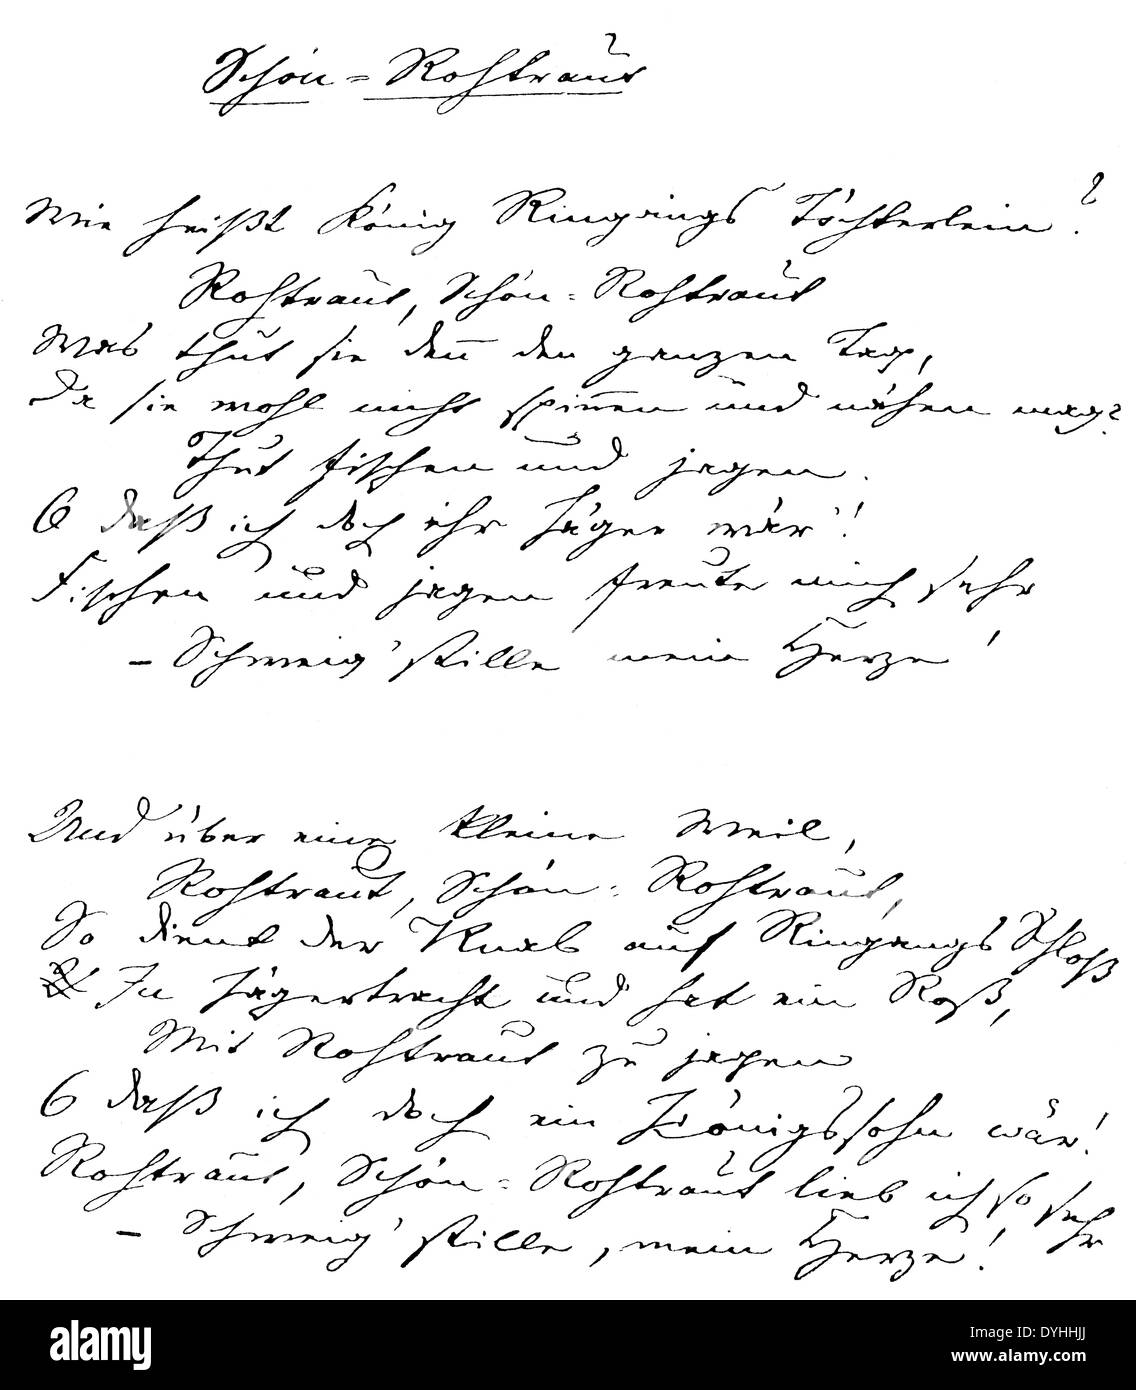 Manuskript von Eduard Friedrich Phillip Moerike, 1804-1875, deutscher Dichter der schwäbischen Schule, Erzähler und Übersetzer Stockfoto